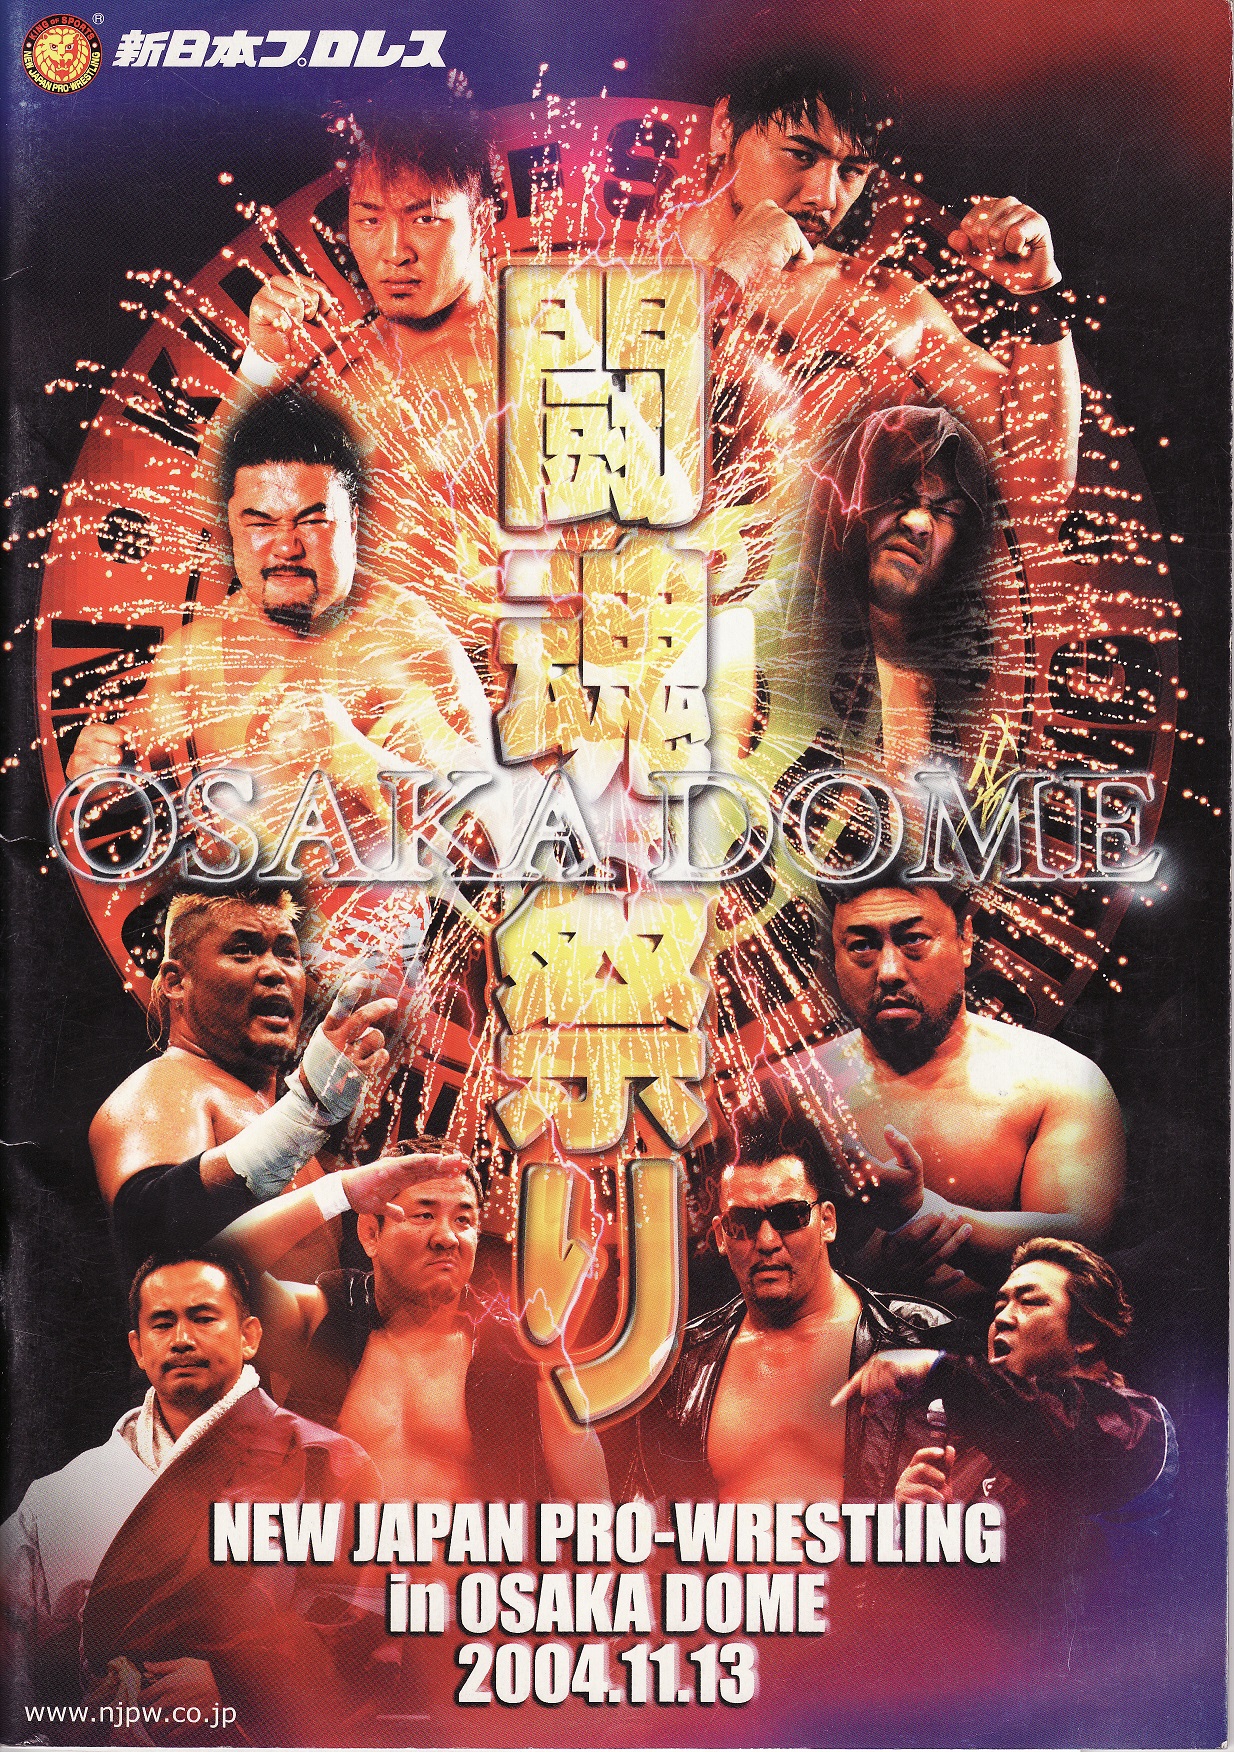 新日本プロレス 2004年11月13日 大阪ドーム事変 番外編 崩壊危機のZERO 